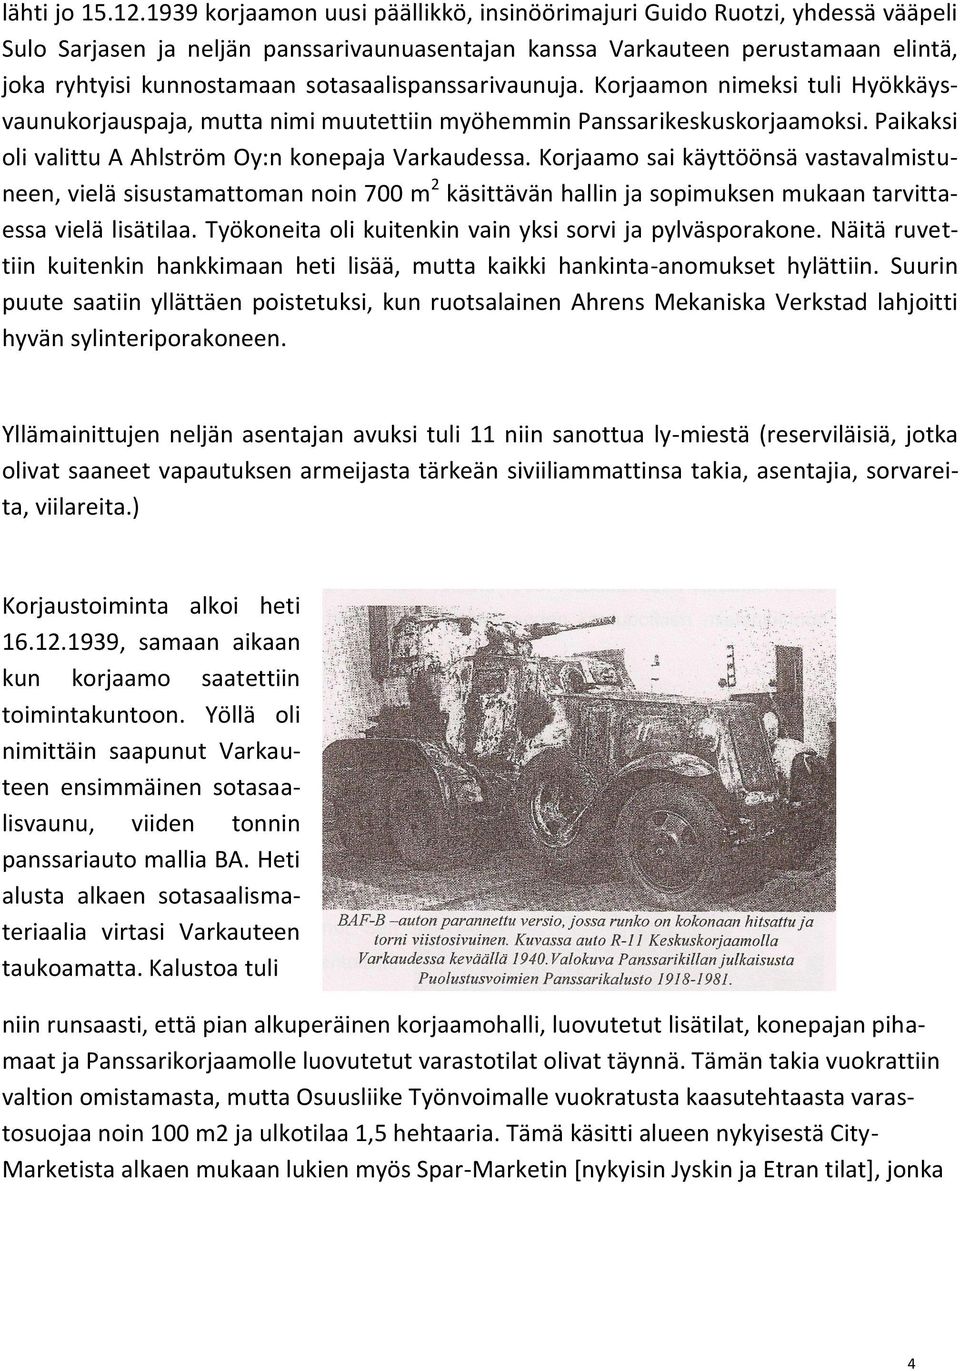 sotasaalispanssarivaunuja. Korjaamon nimeksi tuli Hyökkäysvaunukorjauspaja, mutta nimi muutettiin myöhemmin Panssarikeskuskorjaamoksi. Paikaksi oli valittu A Ahlström Oy:n konepaja Varkaudessa.